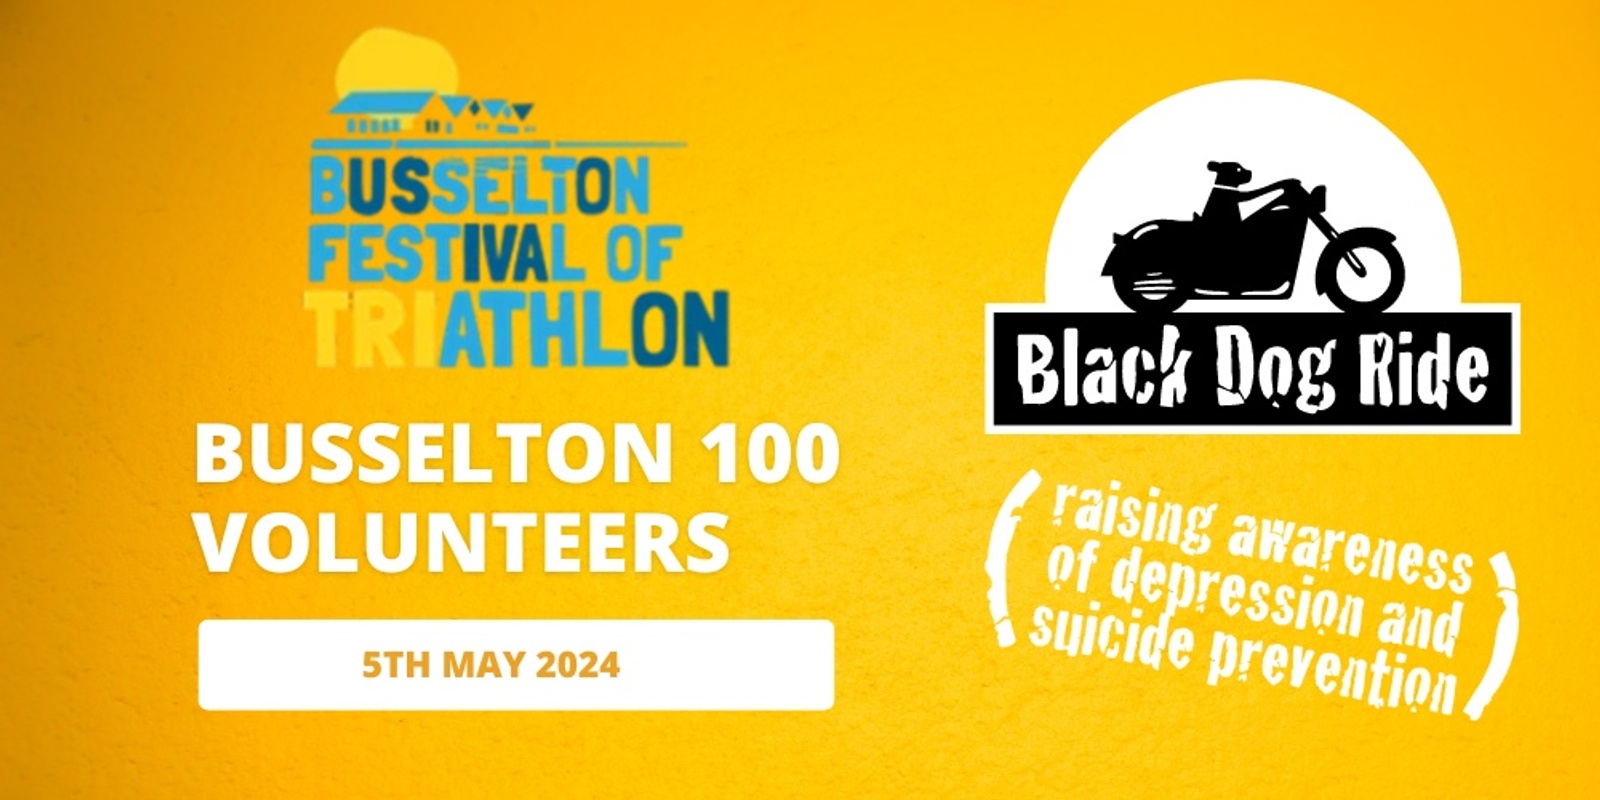 Banner image for Black Dog Ride - Busselton Festival of Triathlon - Busselton 100